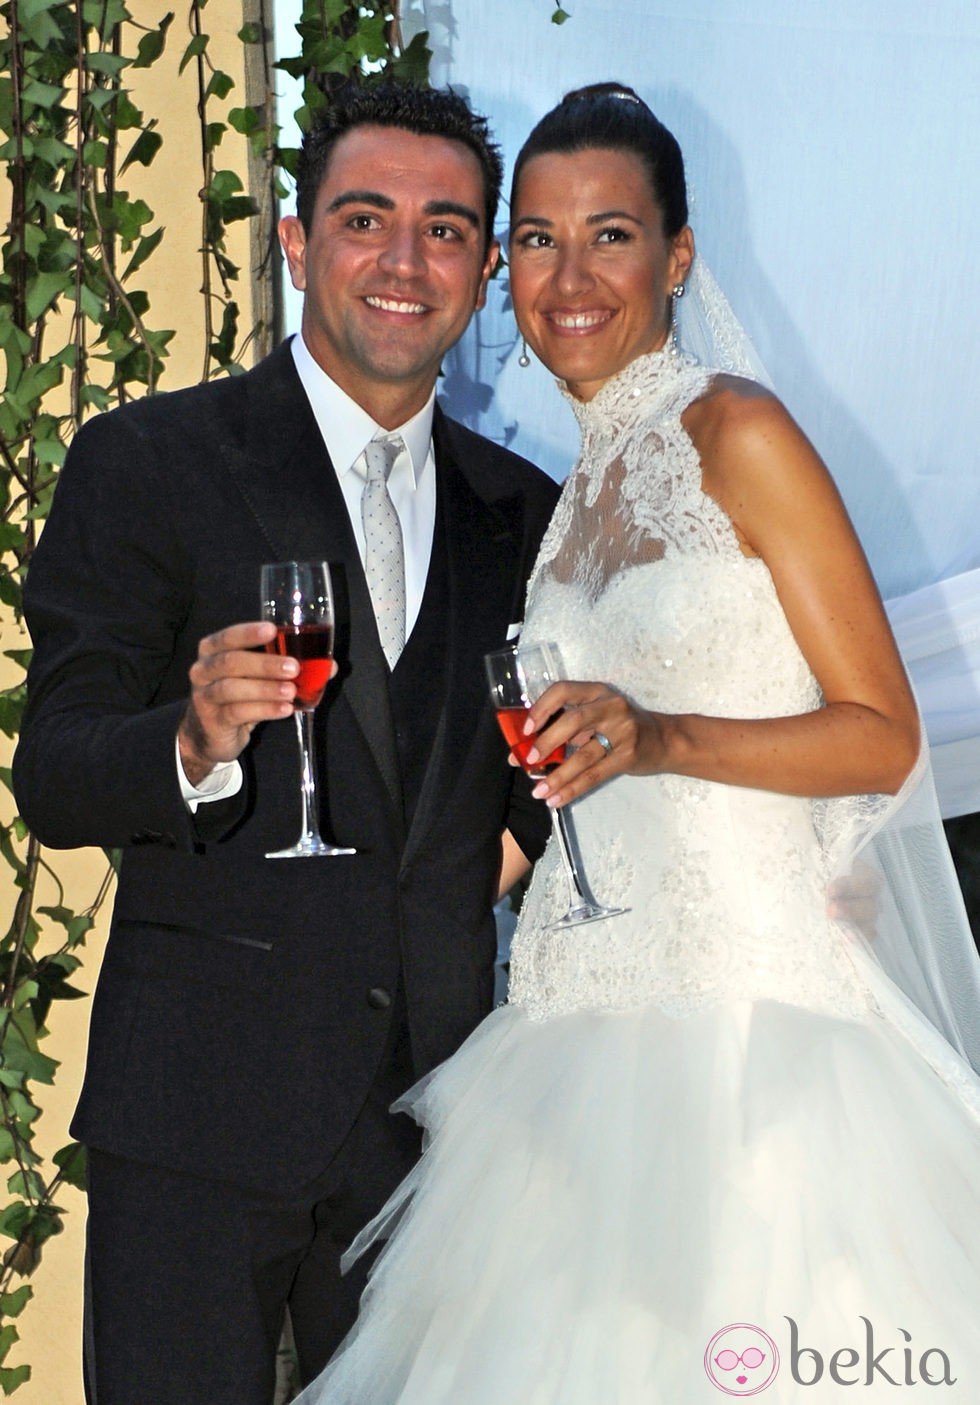 Xavi Hernández y Nuria Cunillera, sonrientes en el día de su boda